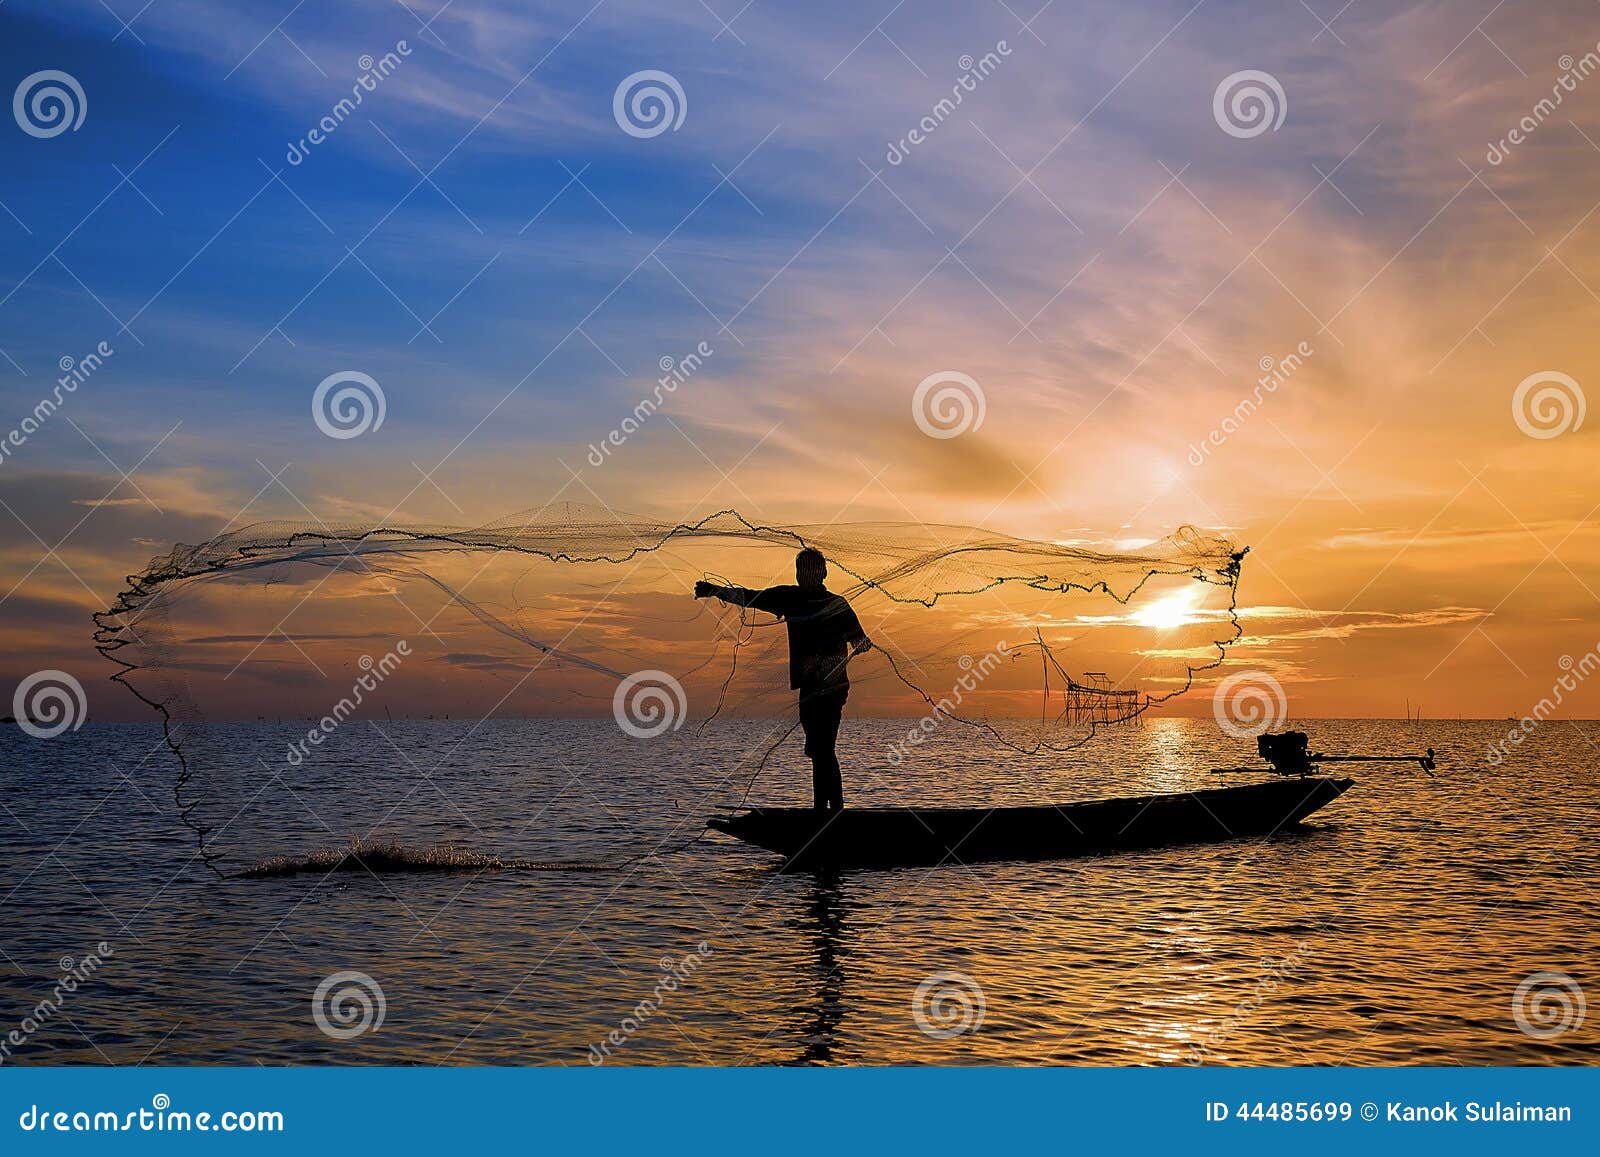 1,207 Fisherman Throwing Net Stock Photos - Free & Royalty-Free